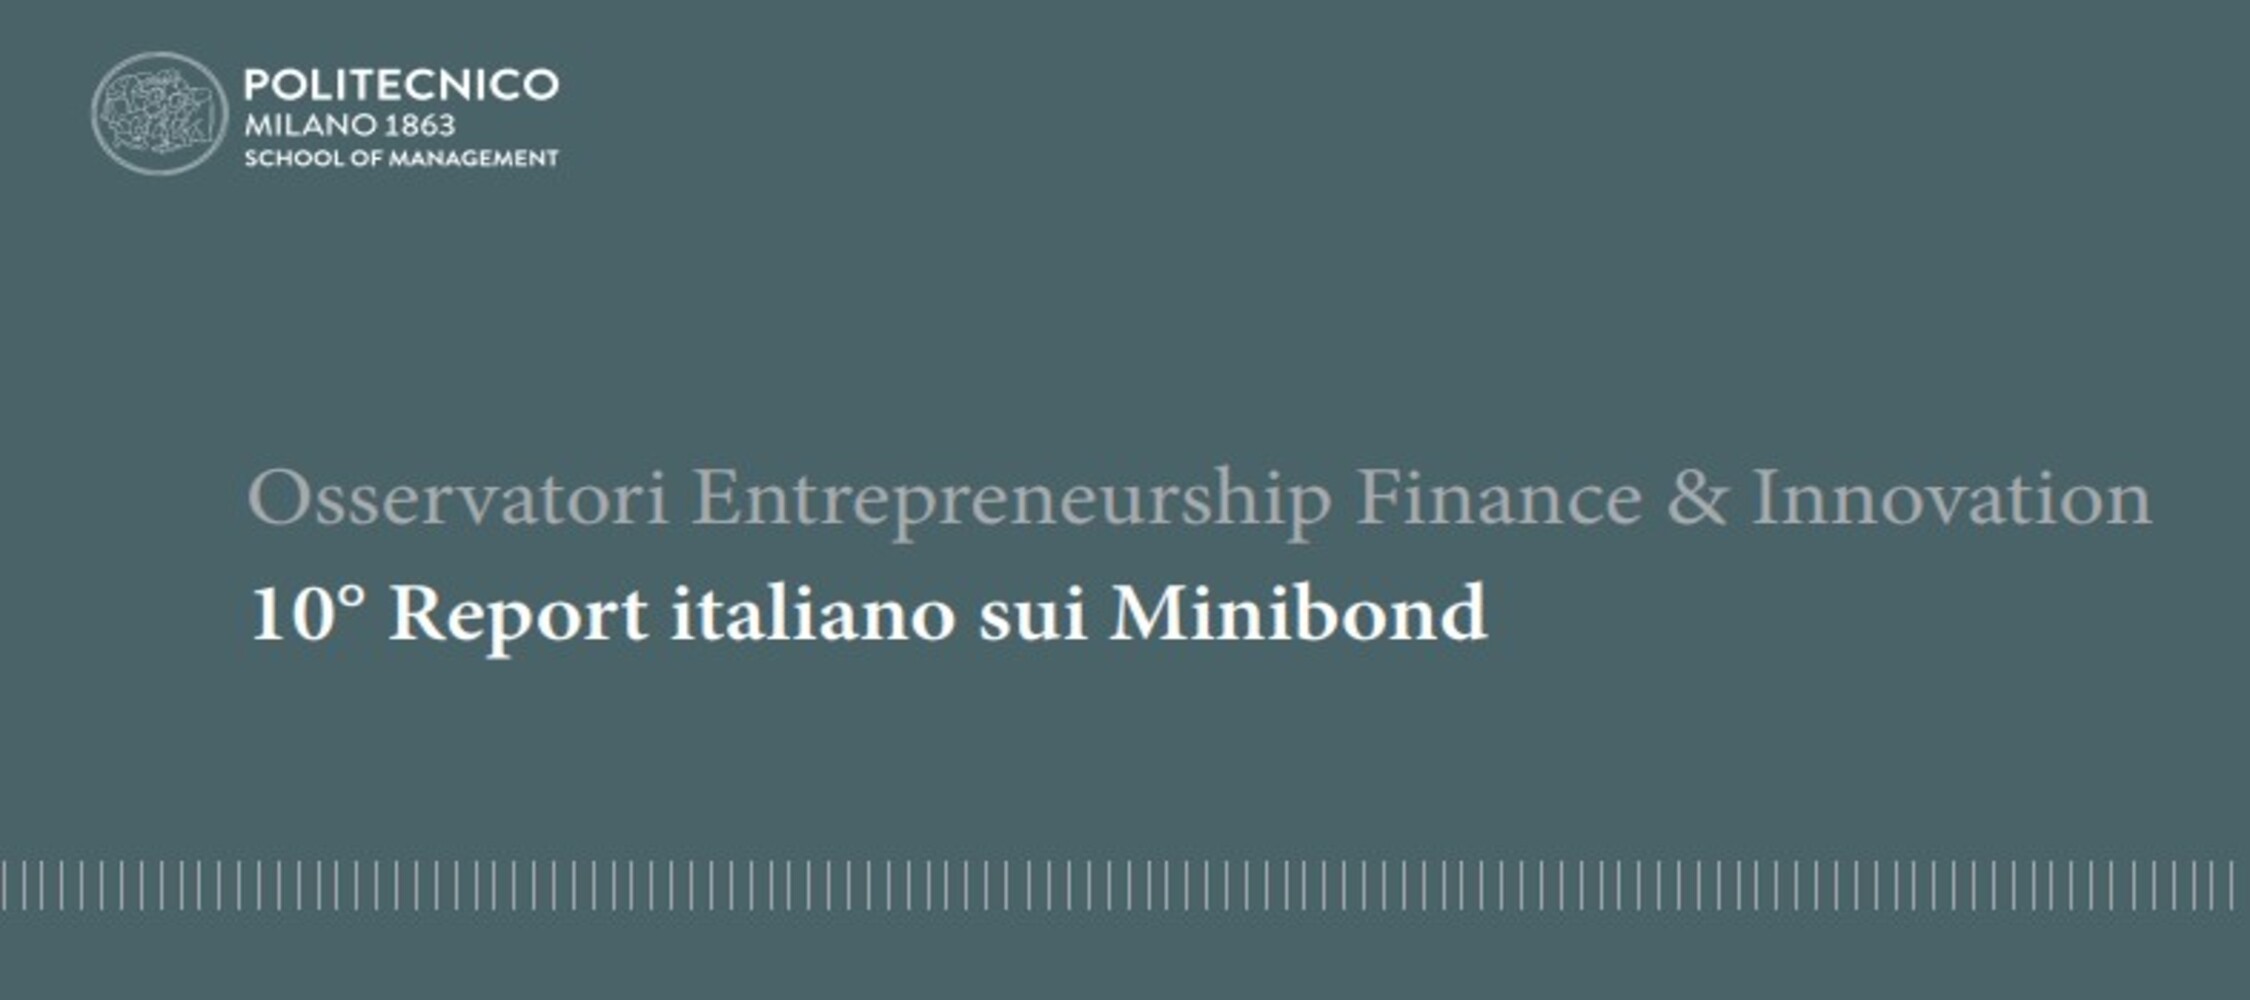 copertina 10 report italiano minibond